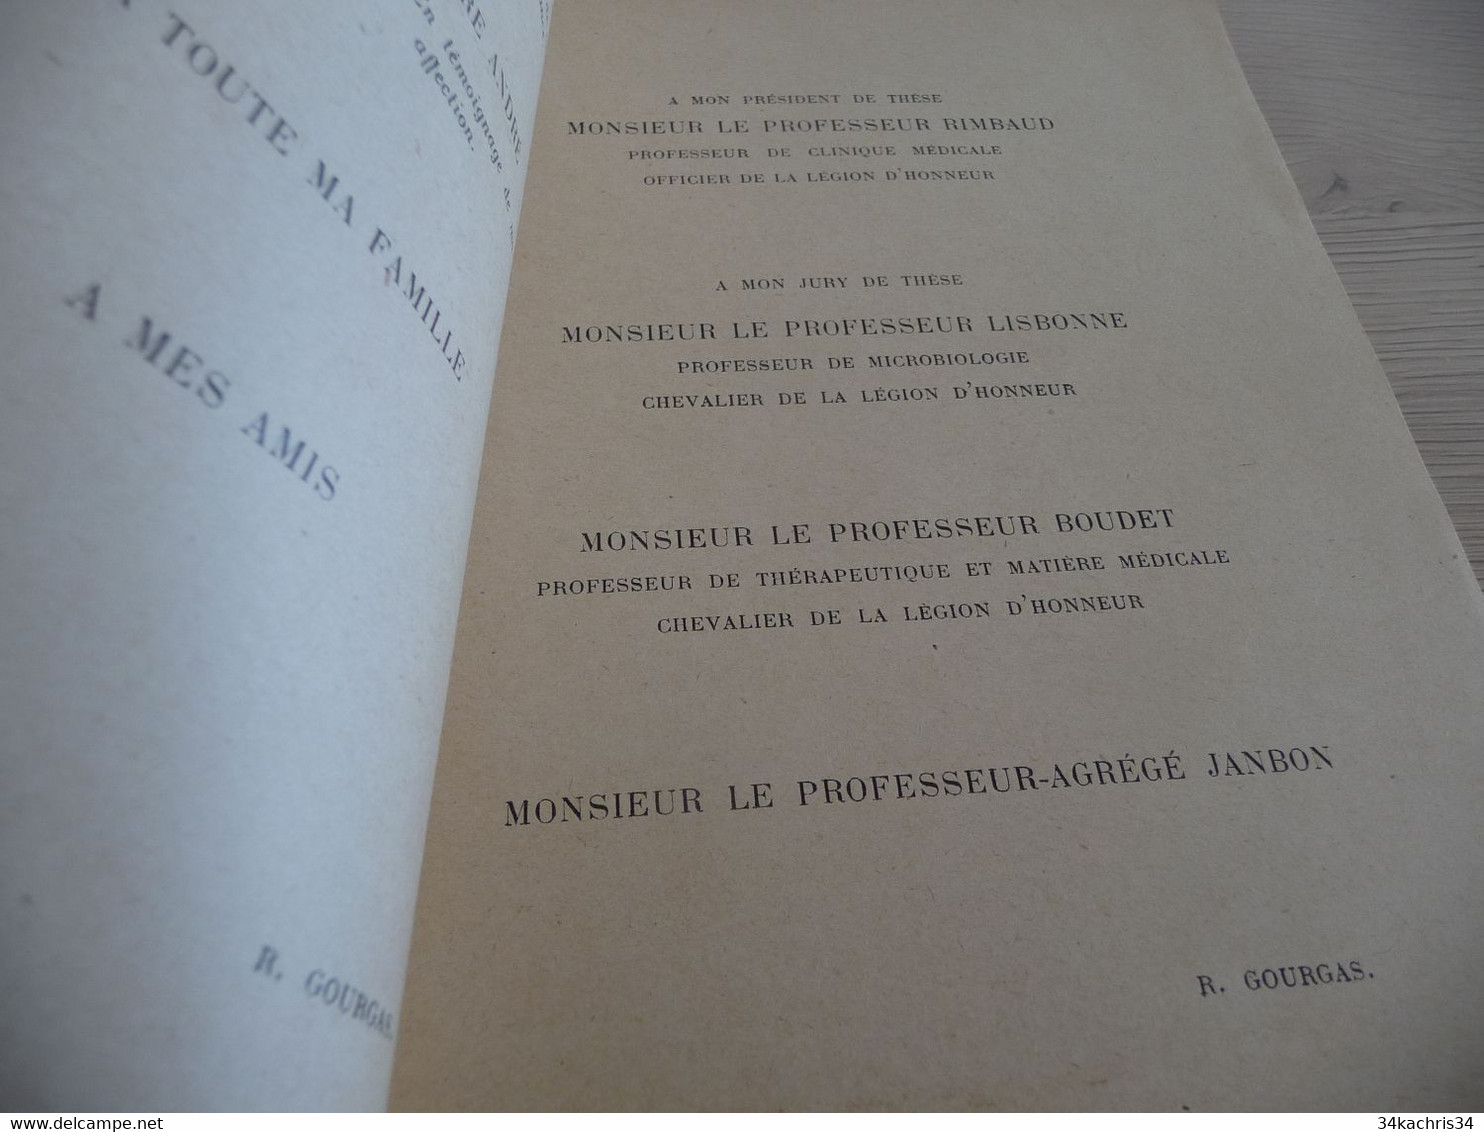 Médecine Docteur René Gourgas Contribution à L'étude Du Traitement De La Fièvre De Malte 83p Montpellier Vers 1930 - Sciences